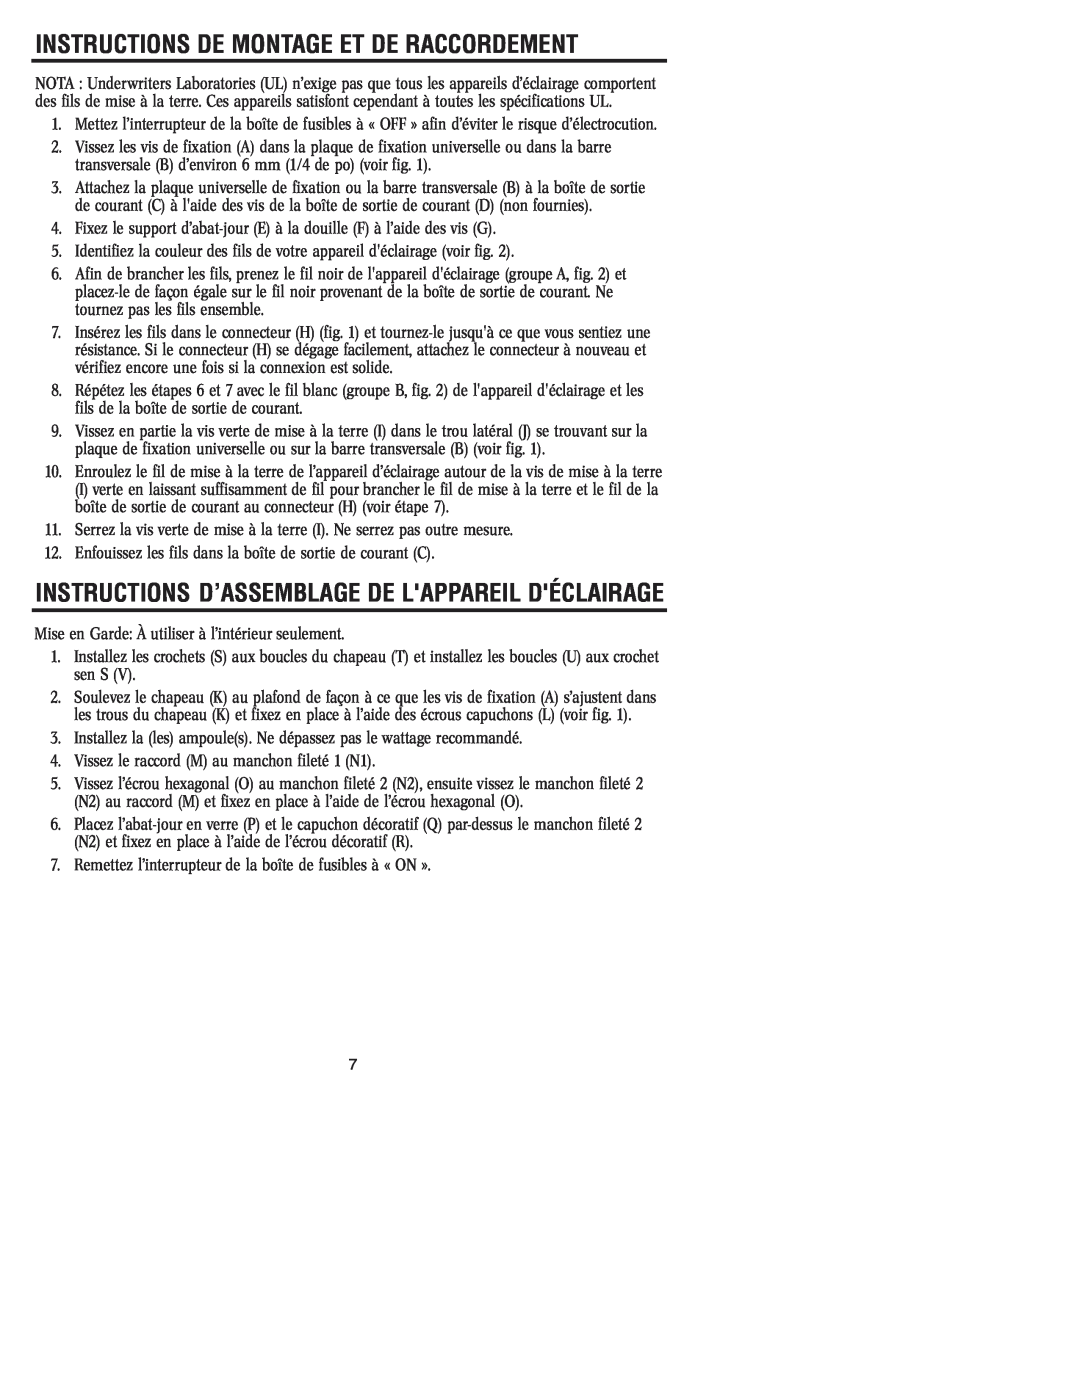 Westinghouse W-116 Instructions D’Assemblage De Lappareil Déclairage, Instructions De Montage Et De Raccordement 